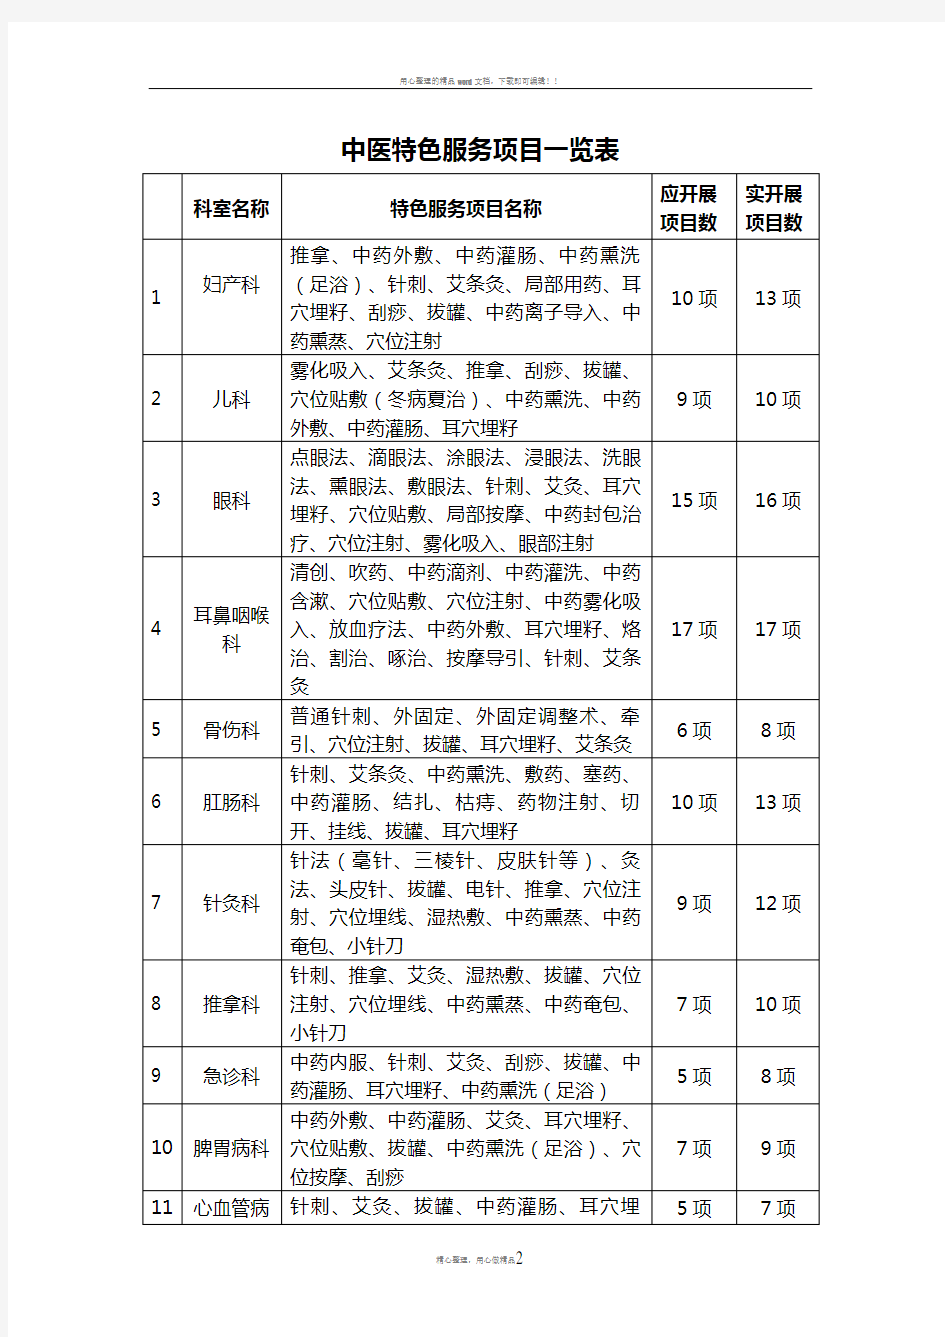 中医特色服务项目一览表